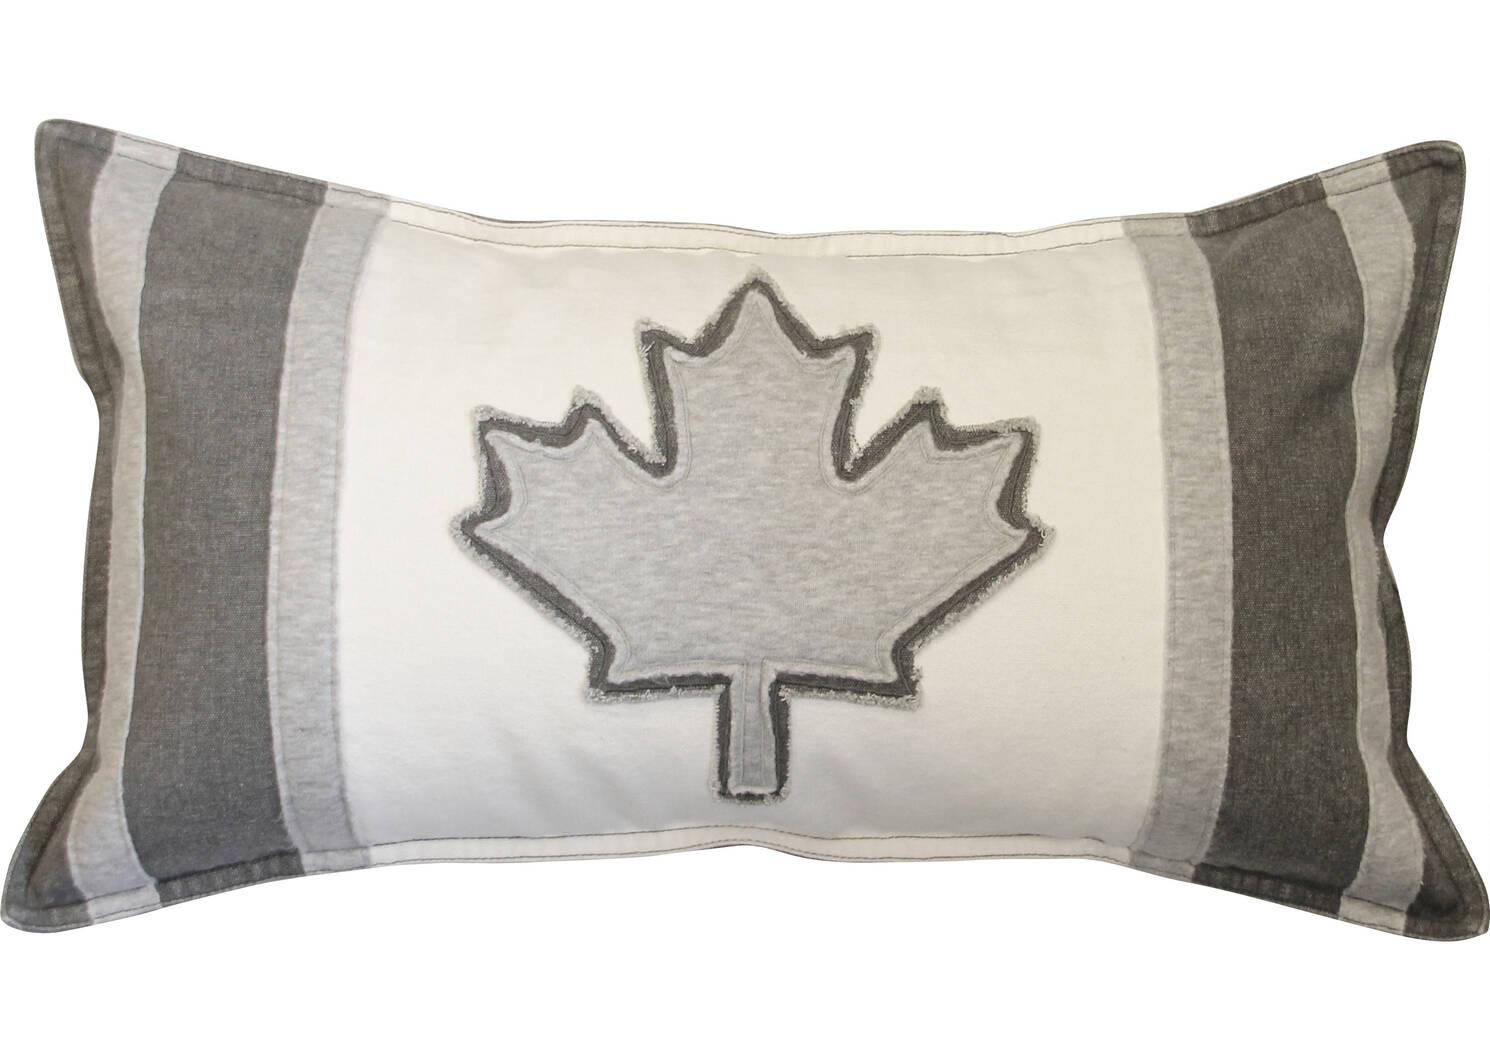 Coussin drapeau canadien Varsity 12x22